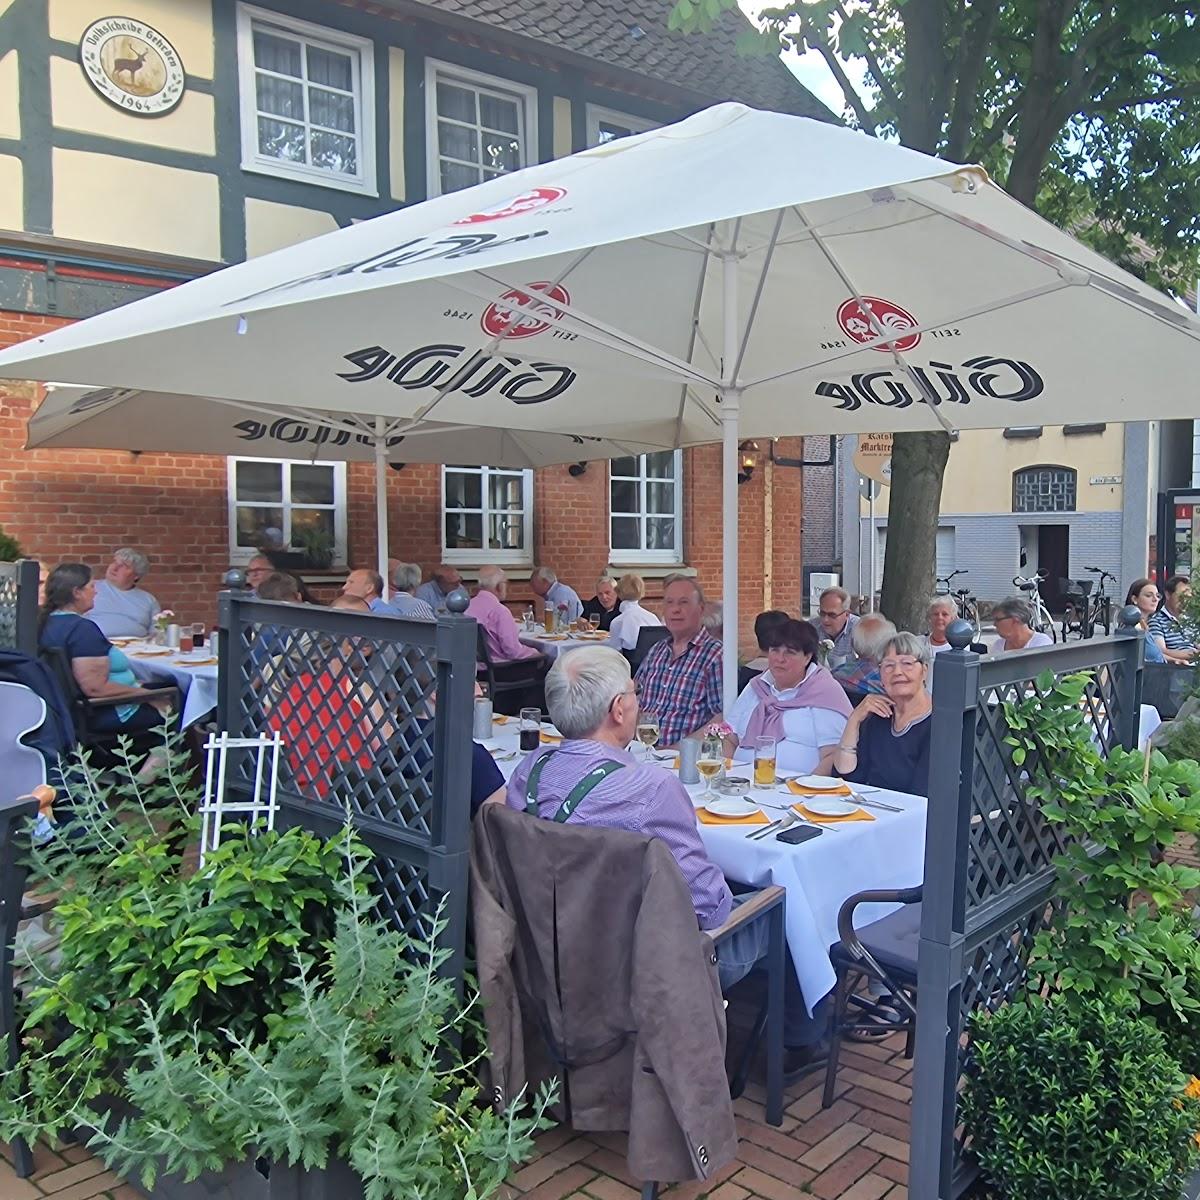 Restaurant "Marktrestaurant Ratskeller" in Gehrden